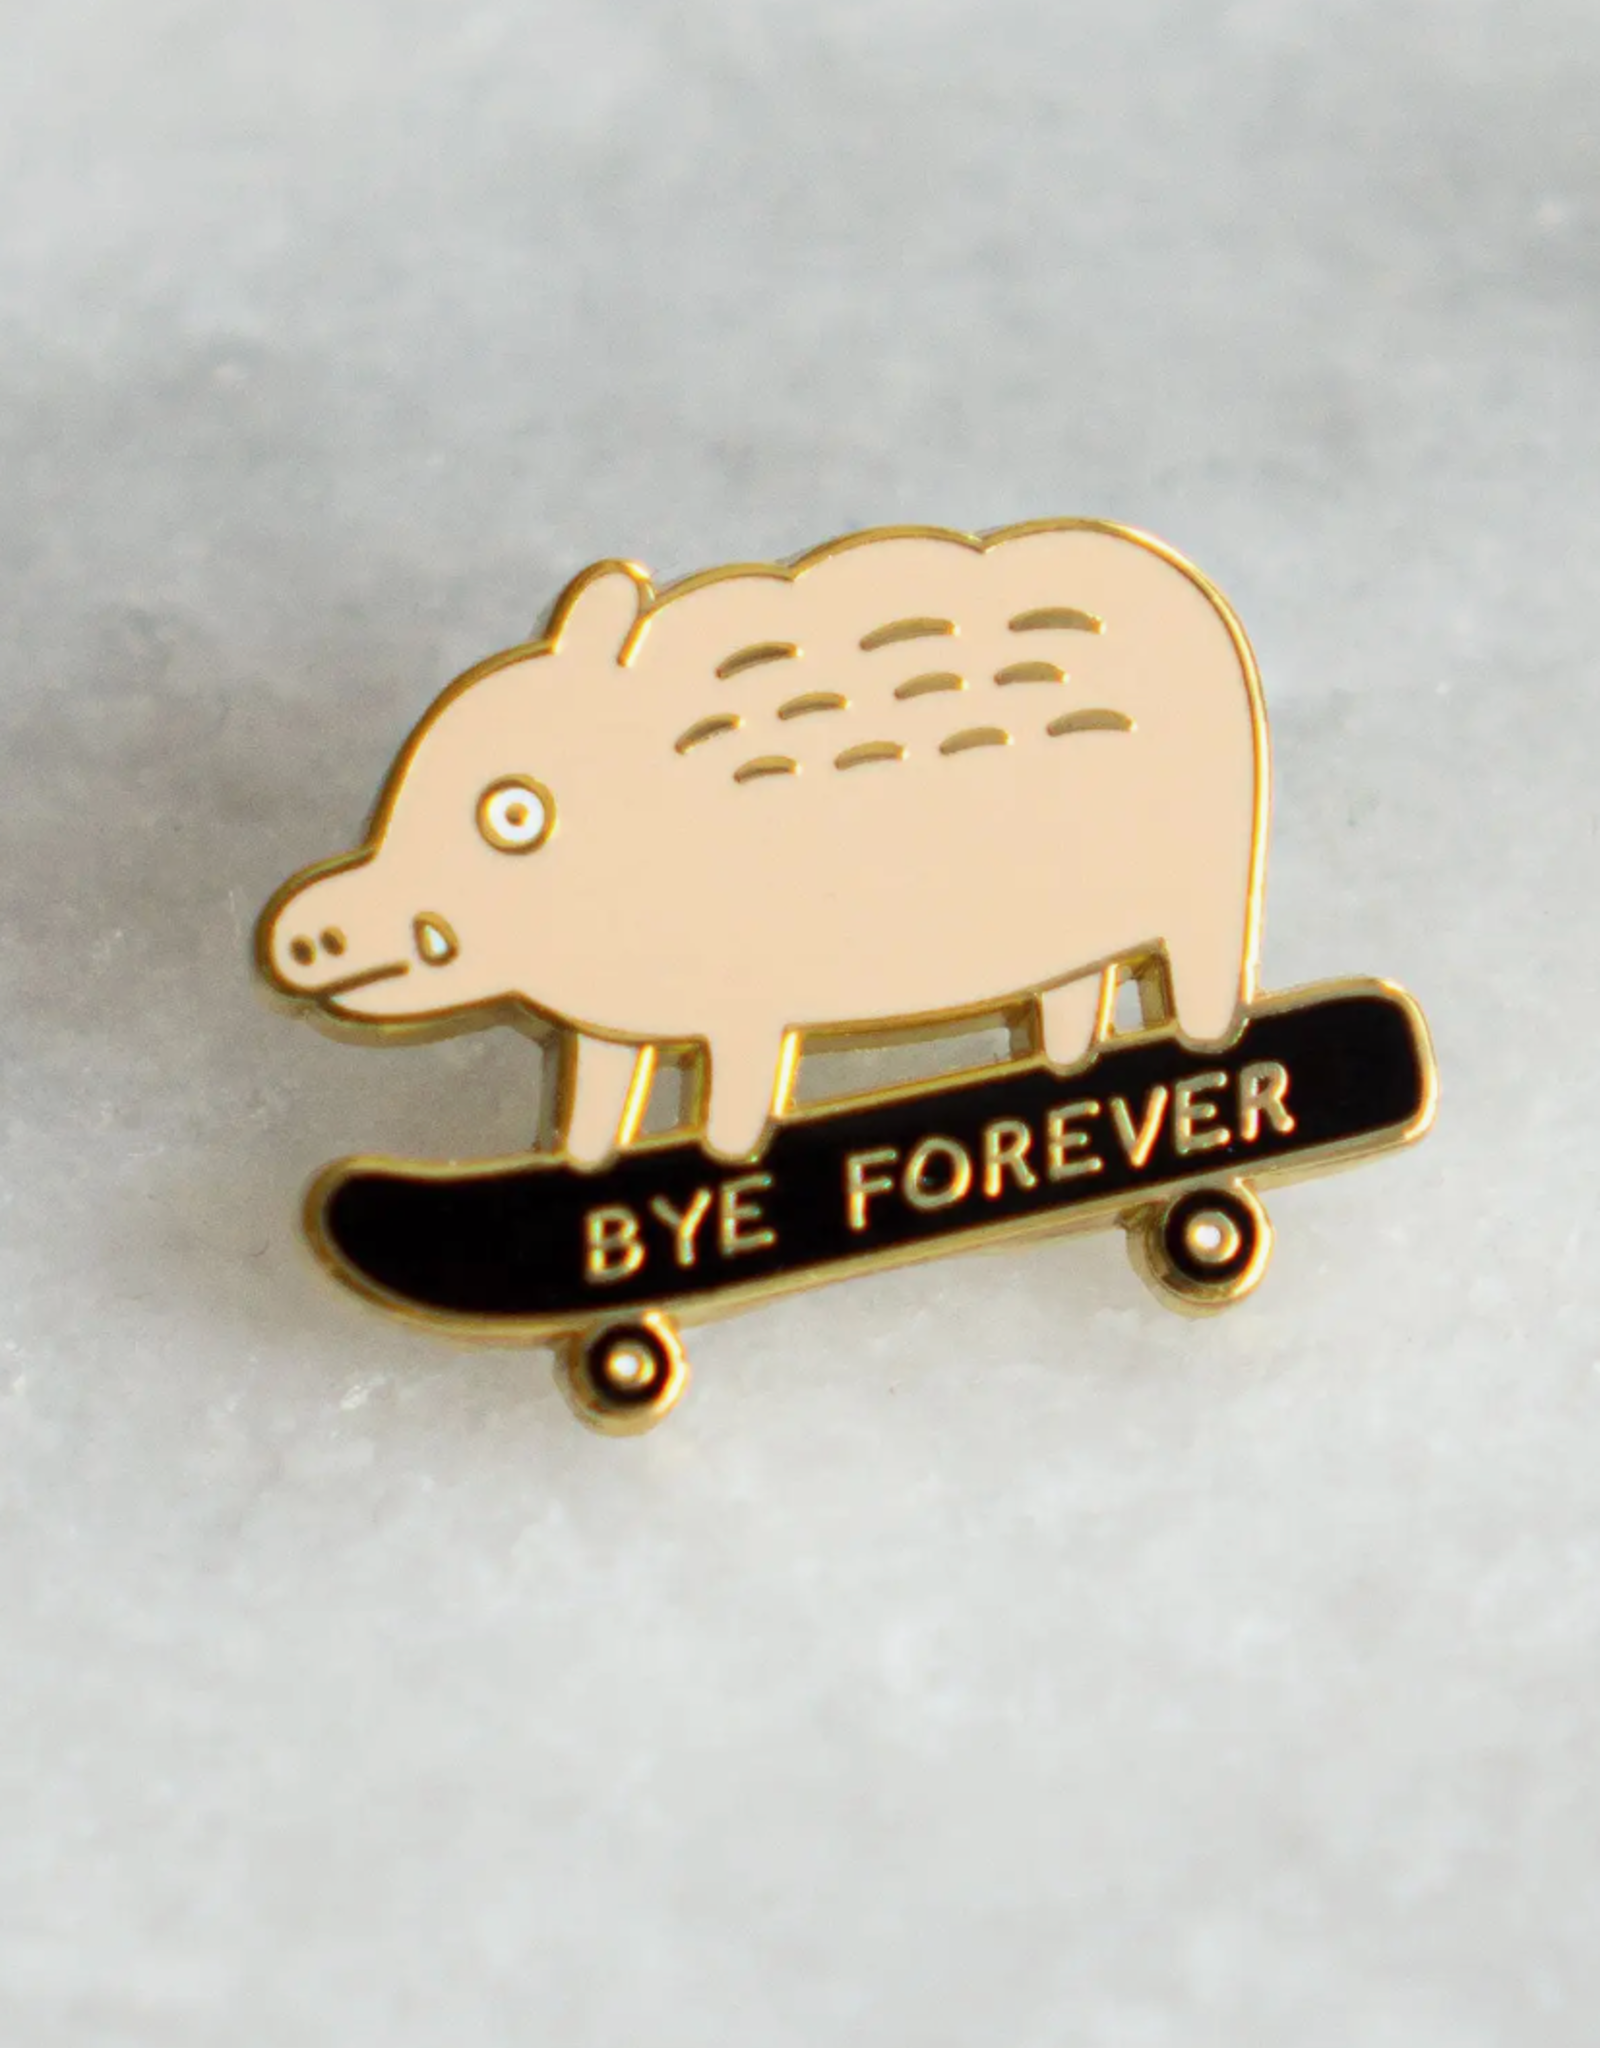 Bye Forever Boar Pin